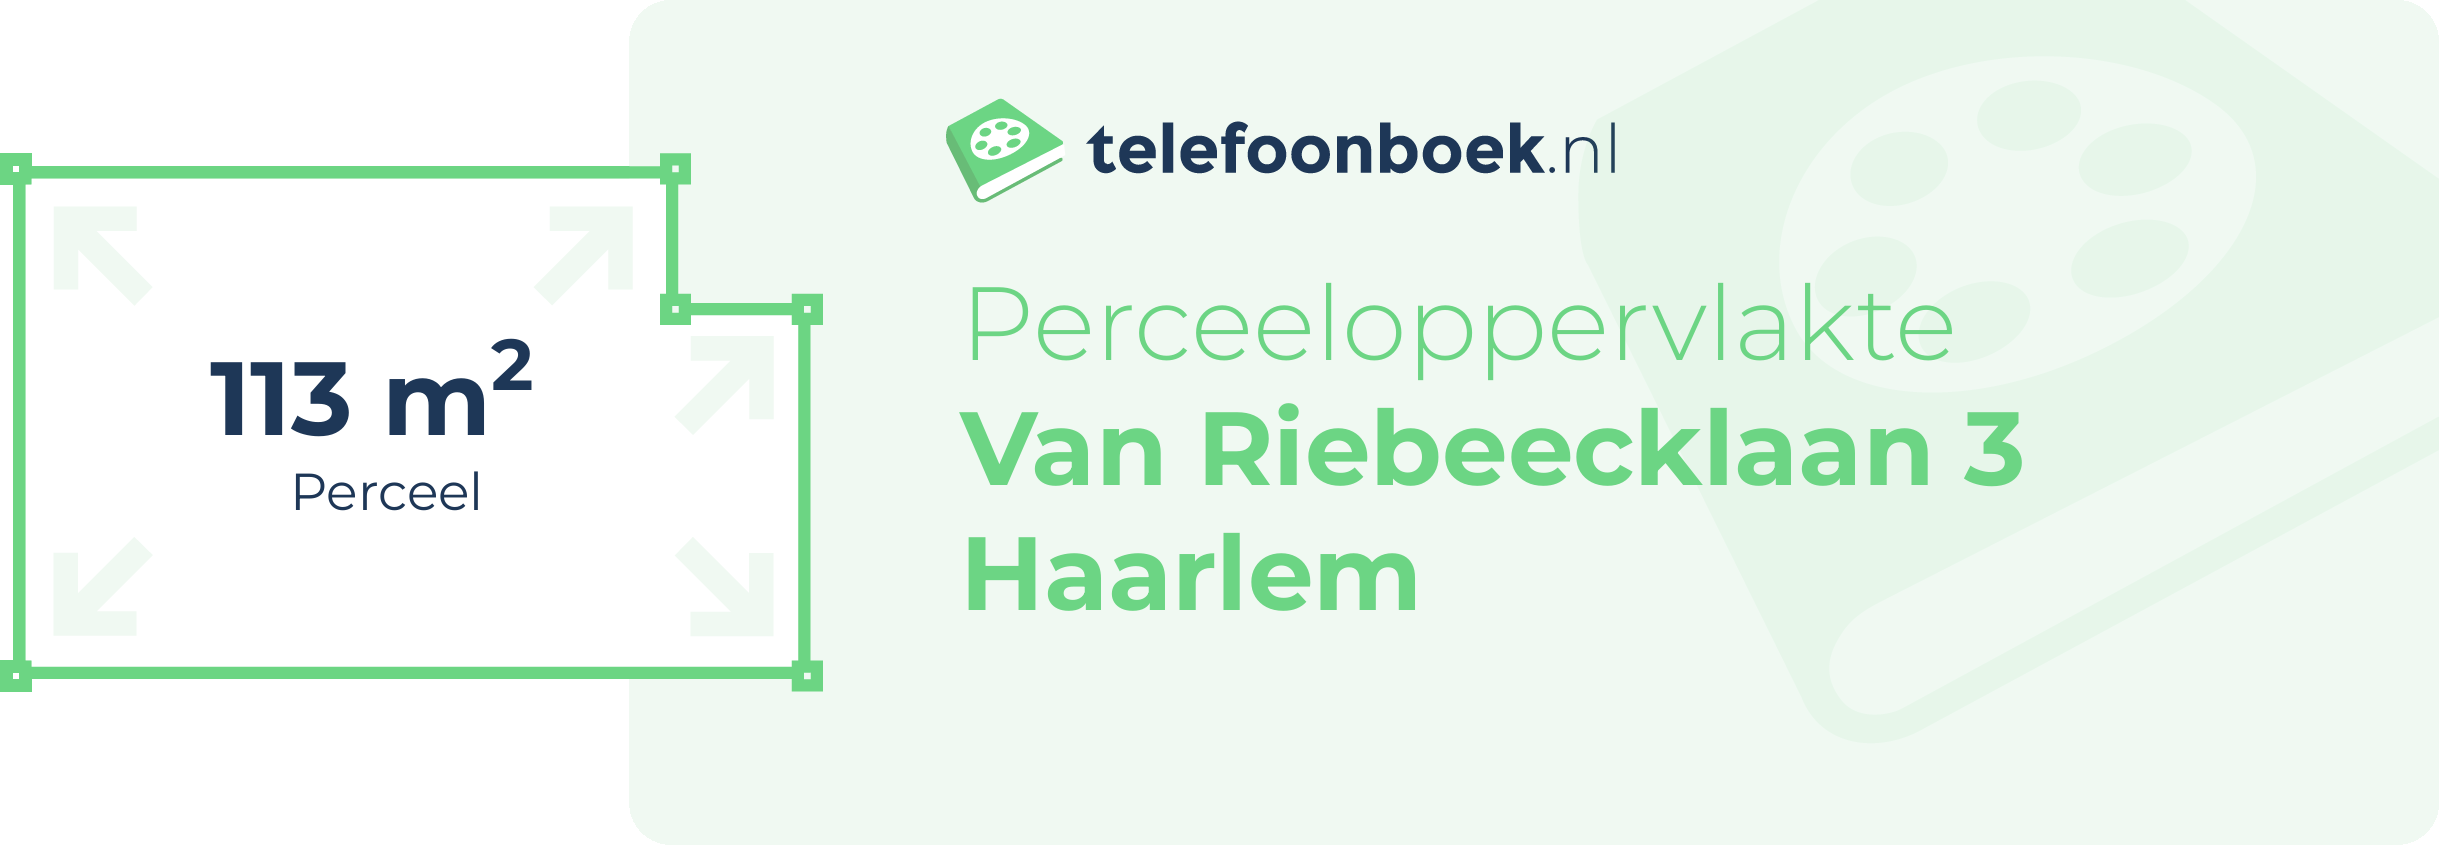 Perceeloppervlakte Van Riebeecklaan 3 Haarlem